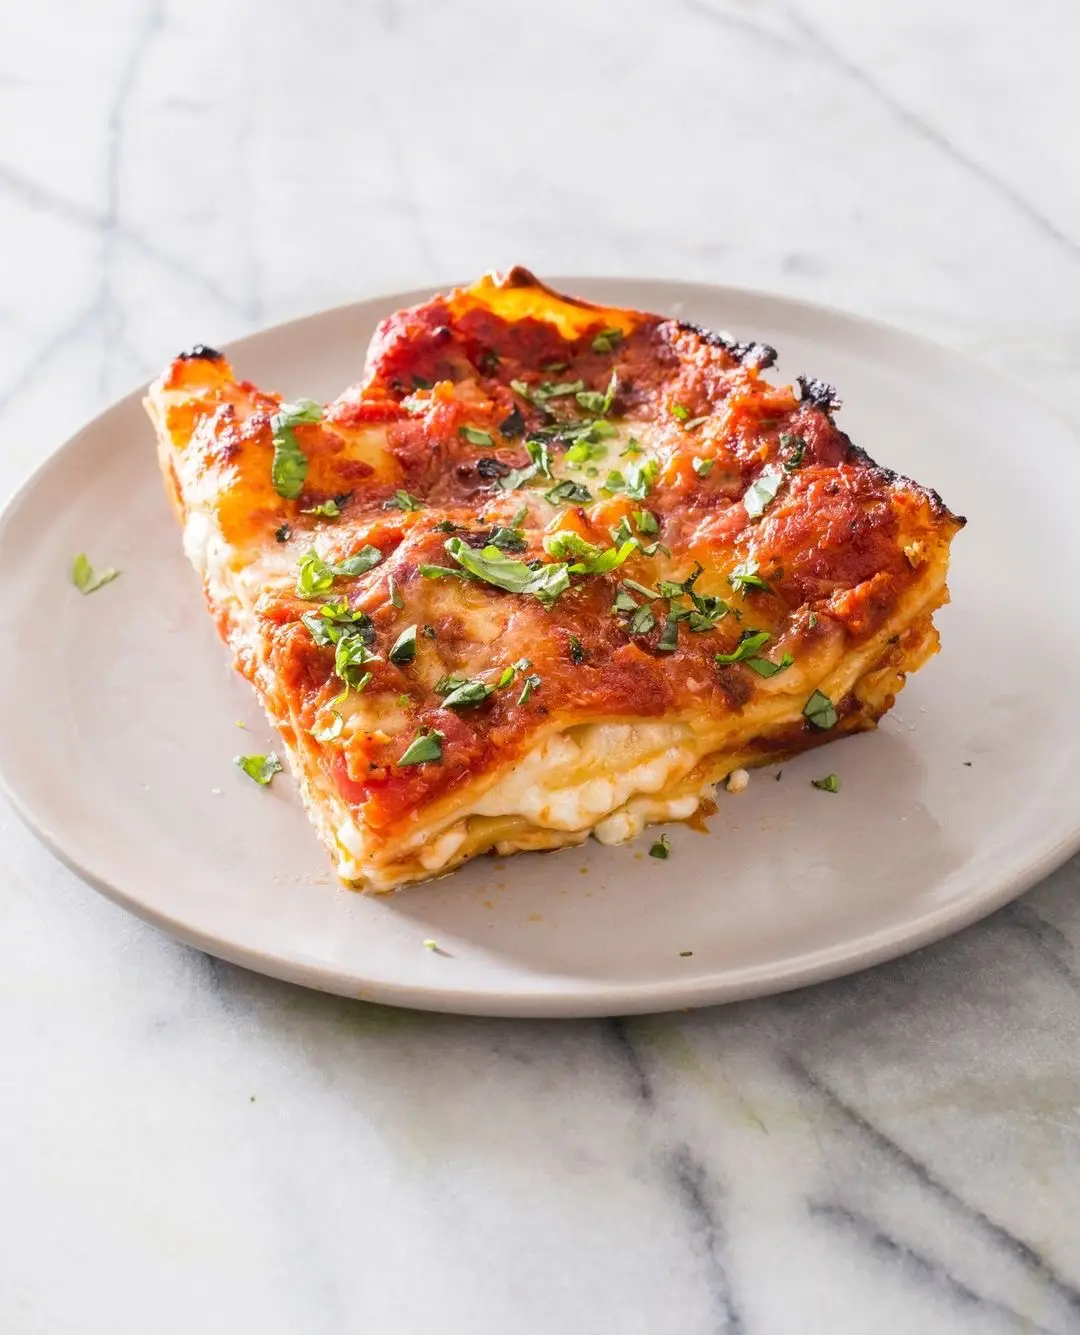 Easy Crockpot Lasagna Video Recipe ...